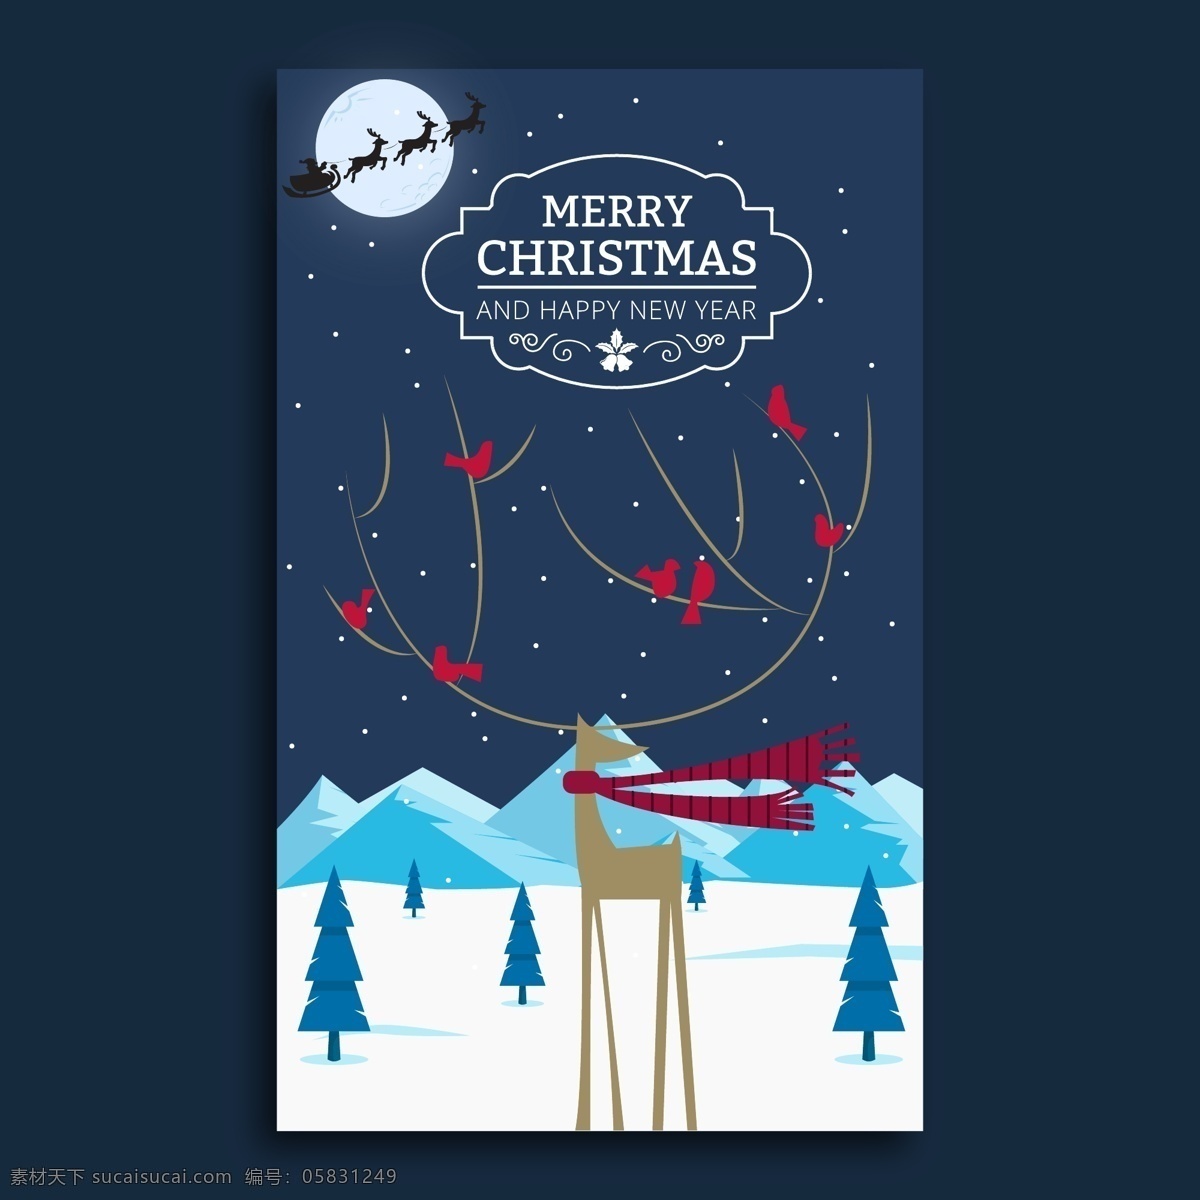 新年快乐海报 羚羊 圣诞 颜色 新年 快乐的一年 快乐 海报 pngtree 圣诞老人 2019 新年快乐